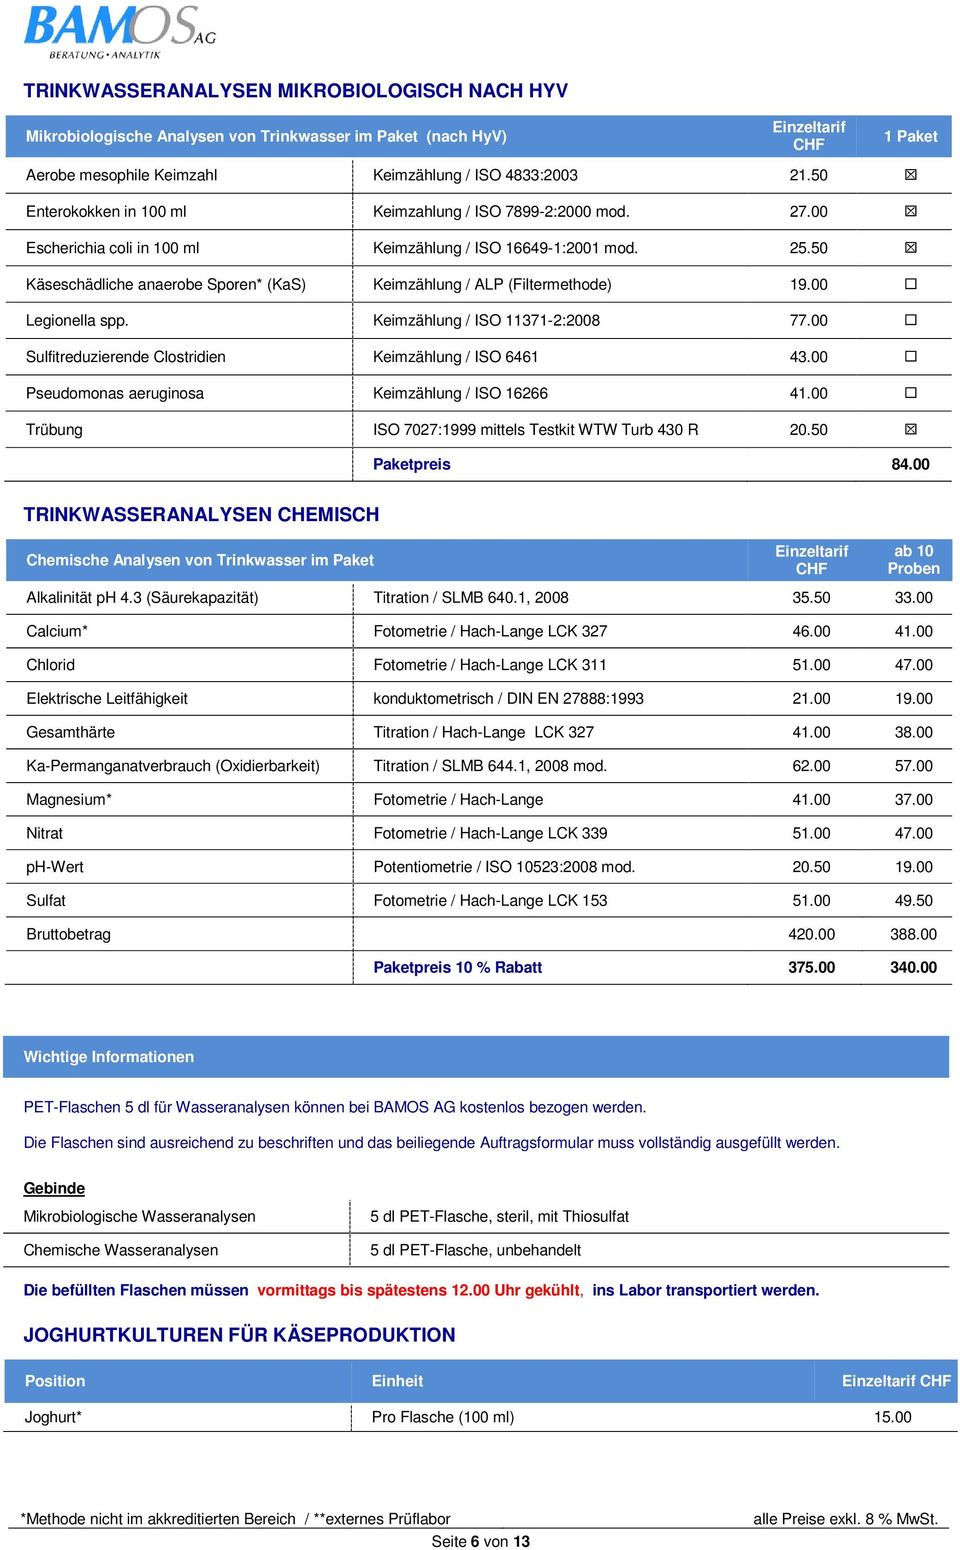 50 Käseschädliche anaerobe Sporen* (KaS) Keimzählung / ALP (Filtermethode) 19.00 Legionella spp. Keimzählung / ISO 11371-2:2008 77.00 Sulfitreduzierende Clostridien Keimzählung / ISO 6461 43.